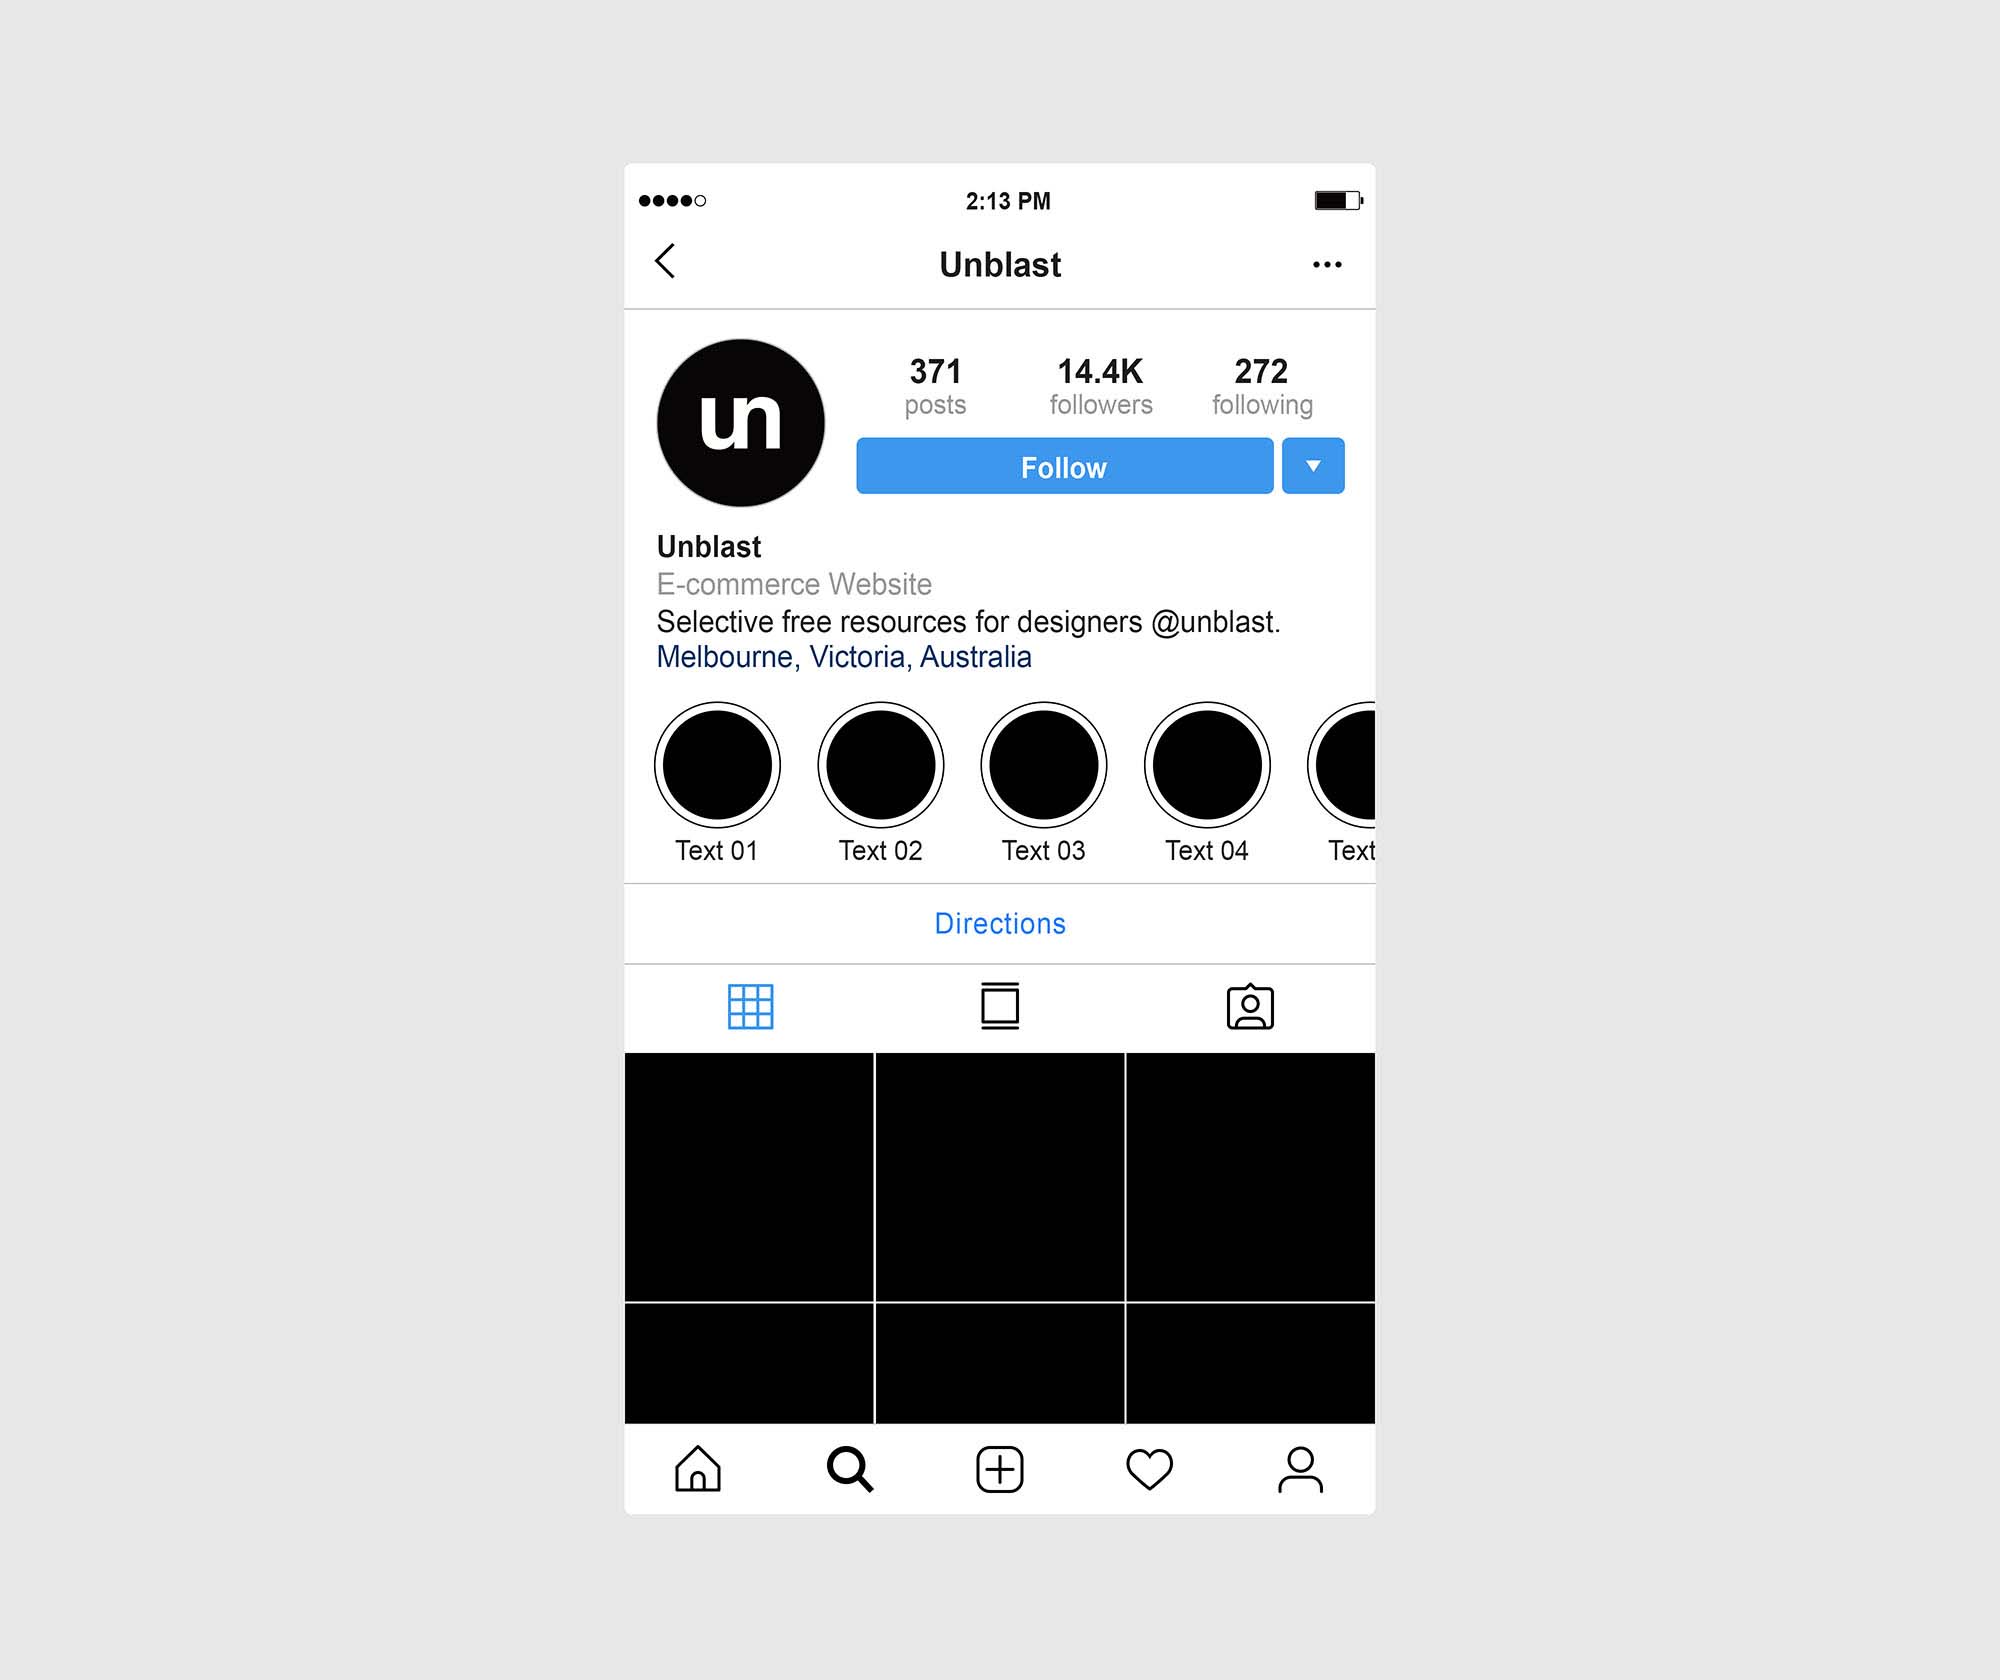 Instagram vô cùng sáng tạo với giao diện thân thiện và nhiều tùy chỉnh cho từng người dùng. Bạn sẽ có cơ hội gặp gỡ những người mới, khám phá nhiều tài khoản độc đáo và tạo ra những bức ảnh đẹp nhất. Giờ đây, Instagram interface đã được cập nhật đến phiên bản tiên tiến và dễ dàng sử dụng hơn bao giờ hết.